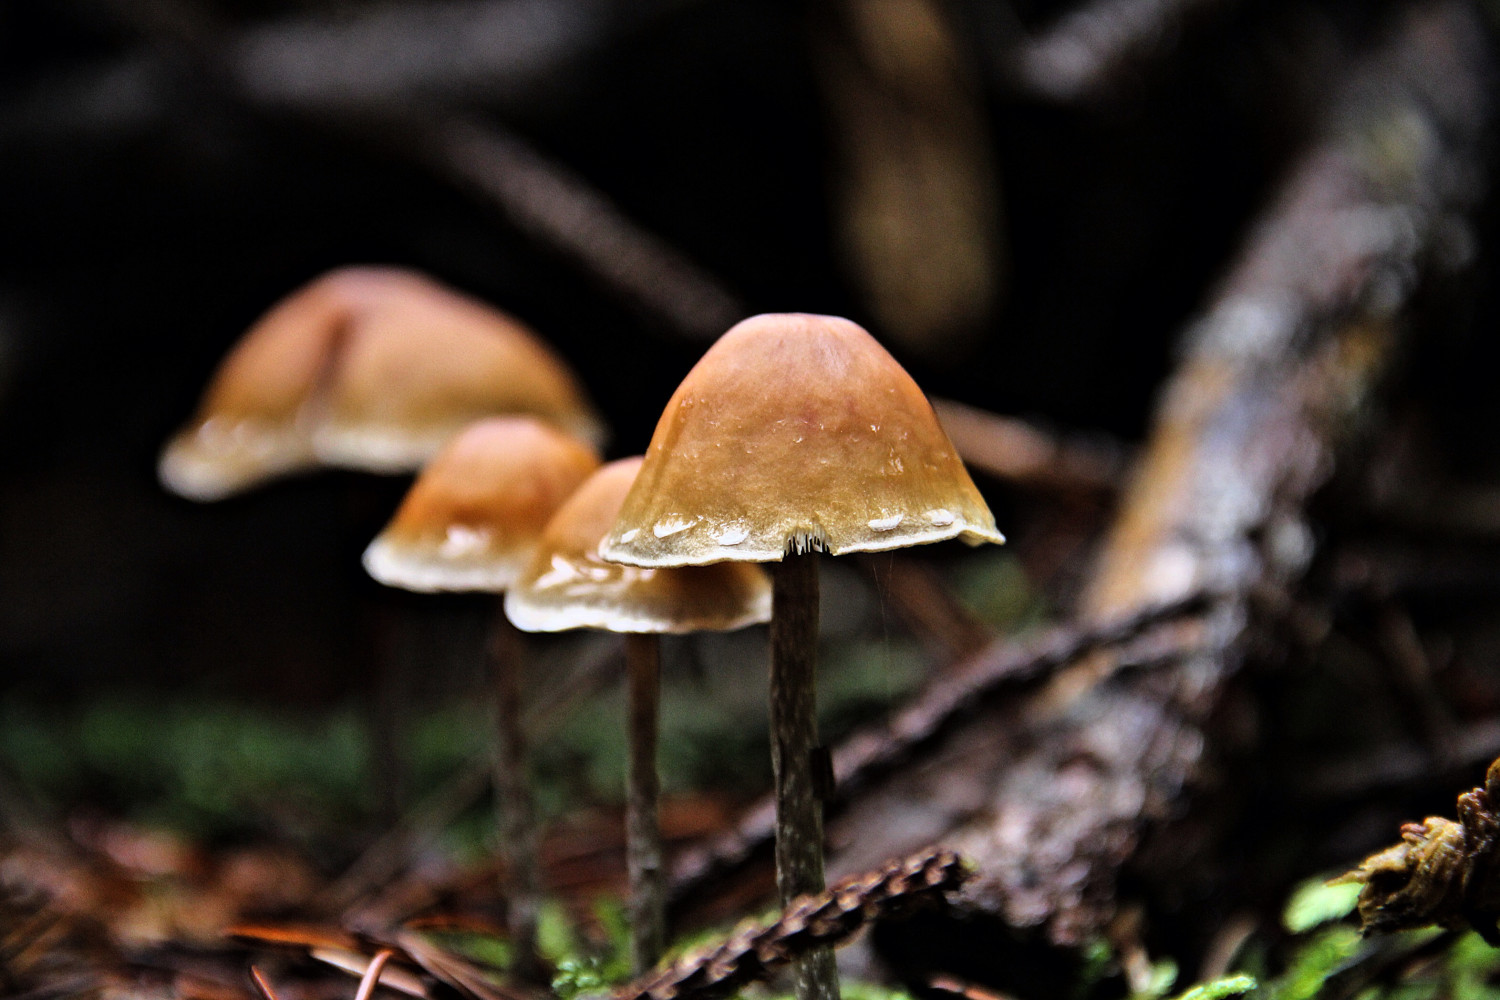 Seth Godin thinks of you as a mushroom farmer